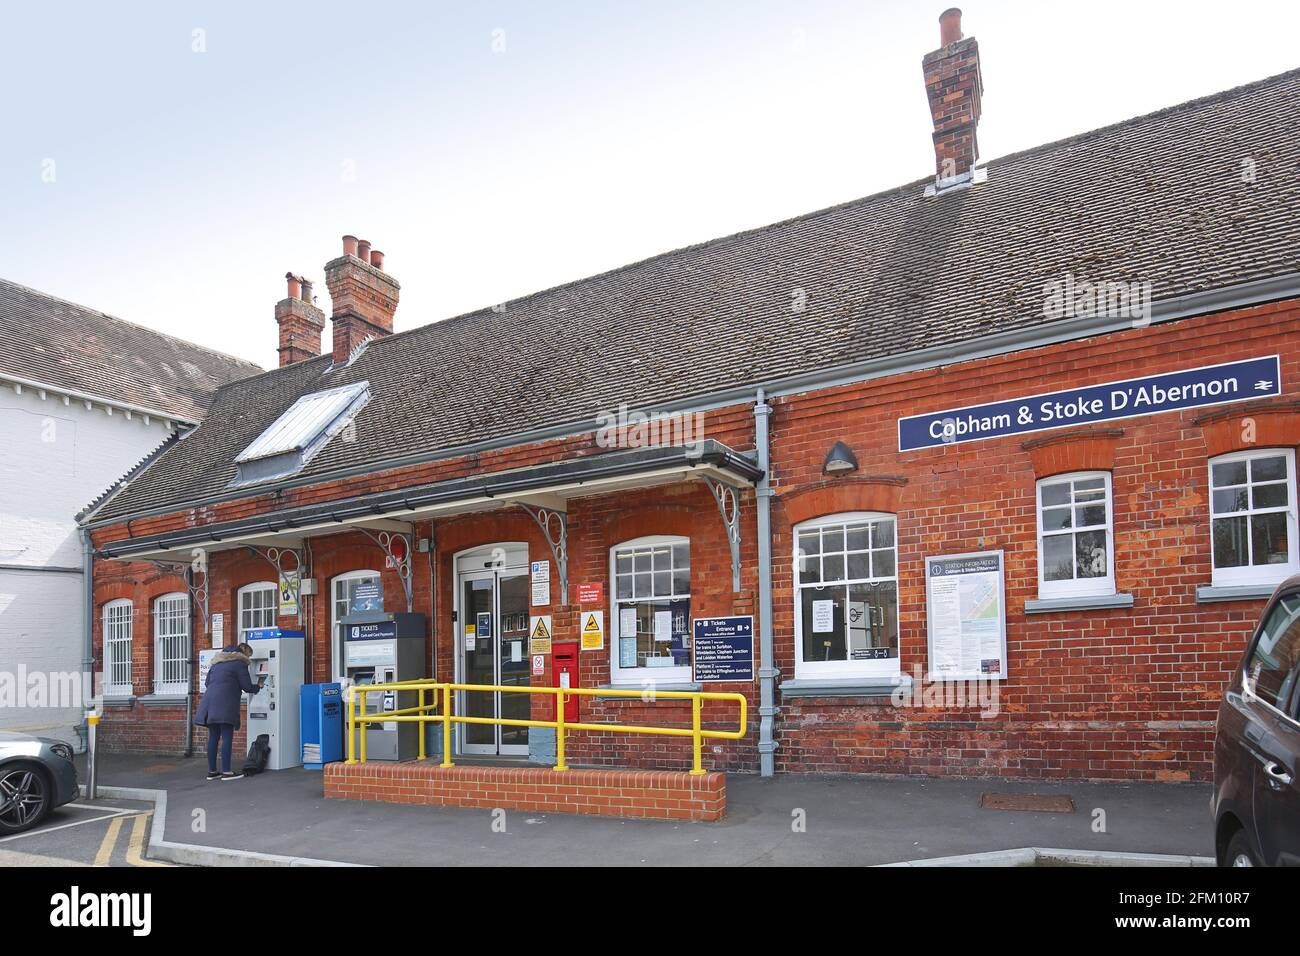 Eintritt zu Cobham und Stoke D'Abernon Station, Surrey. Typischer viktorianischer Bahnhof in den Vororten von London, Großbritannien. Zeigt den Passagier, der den Ticketautomaten benutzt. Stockfoto